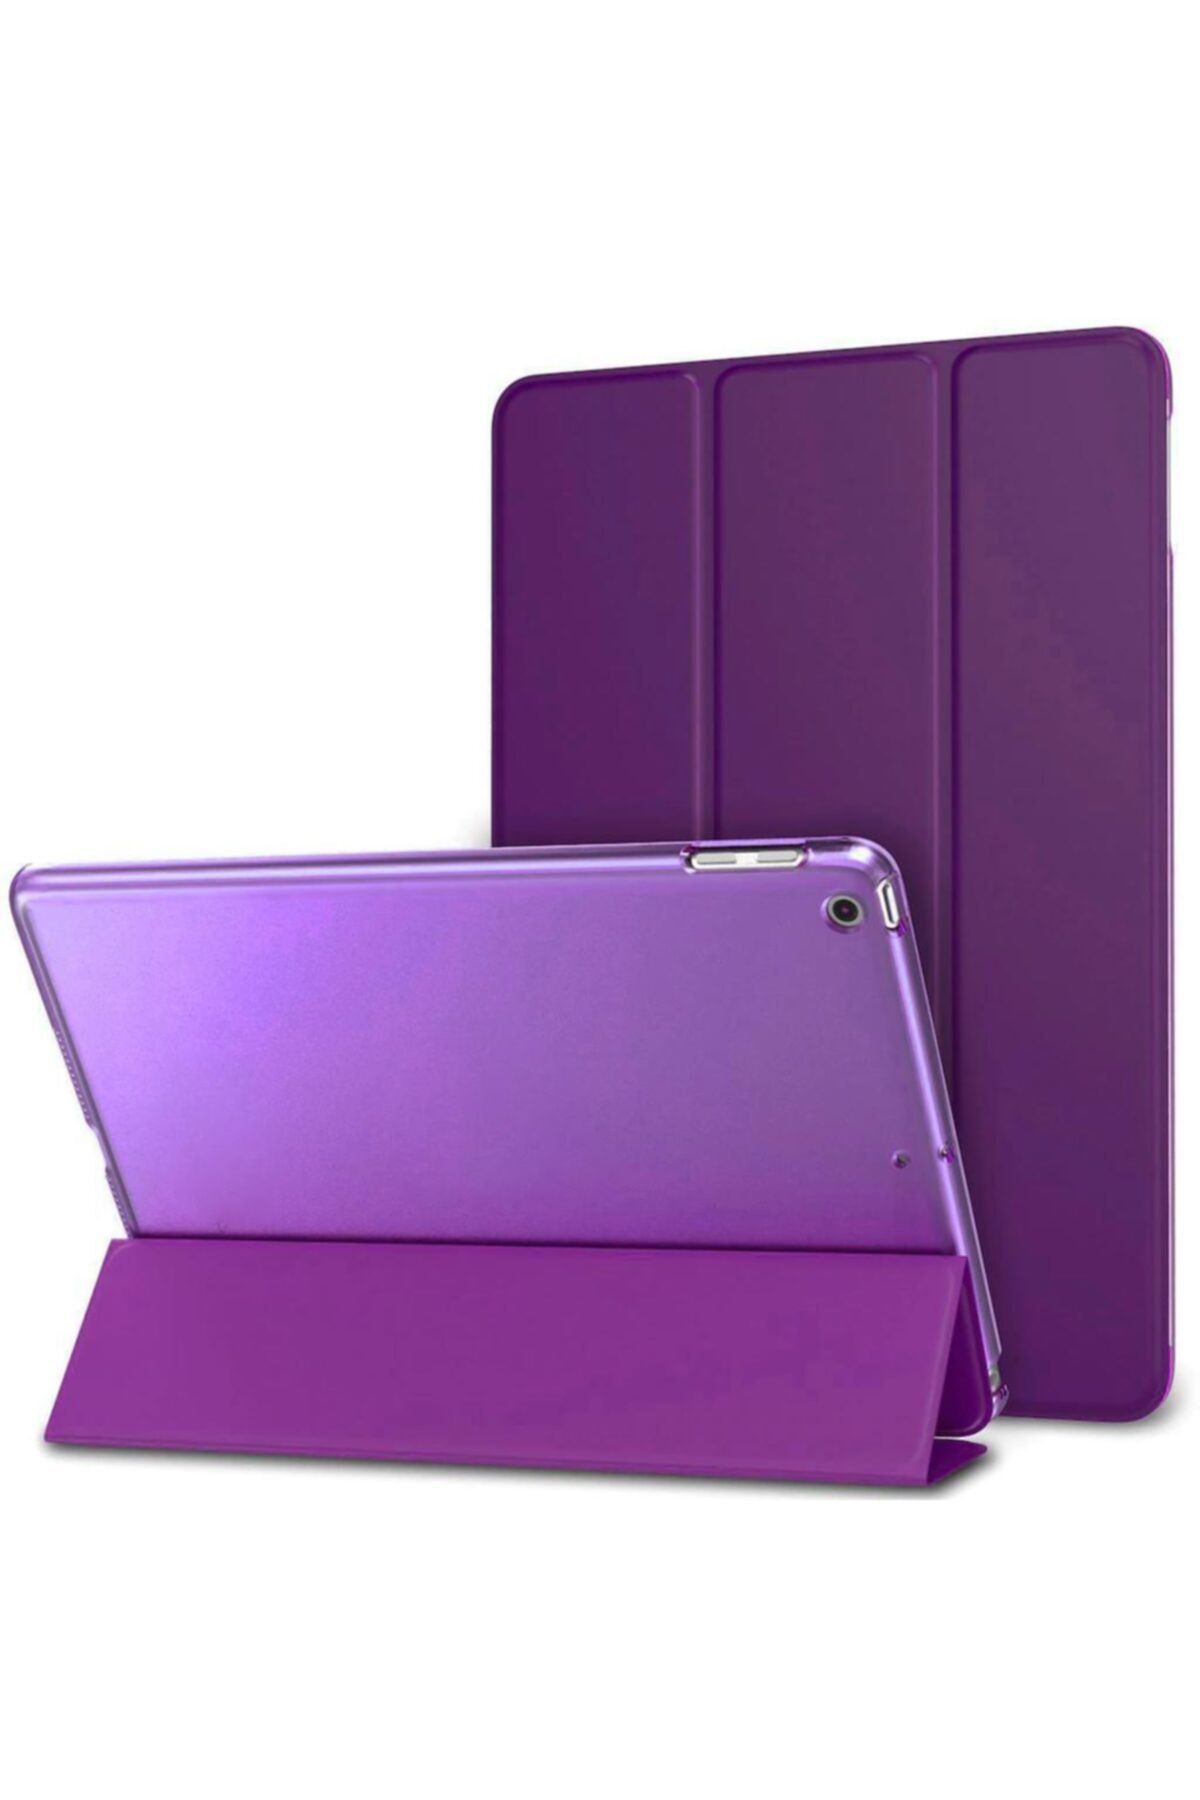 TEKNETSTORE Apple Ipad 8. Ve 9. Nesil 2020 /2021 10.2 Inç Tablet Flip Smart Standlı Akıllı Kılıf Smart Cover